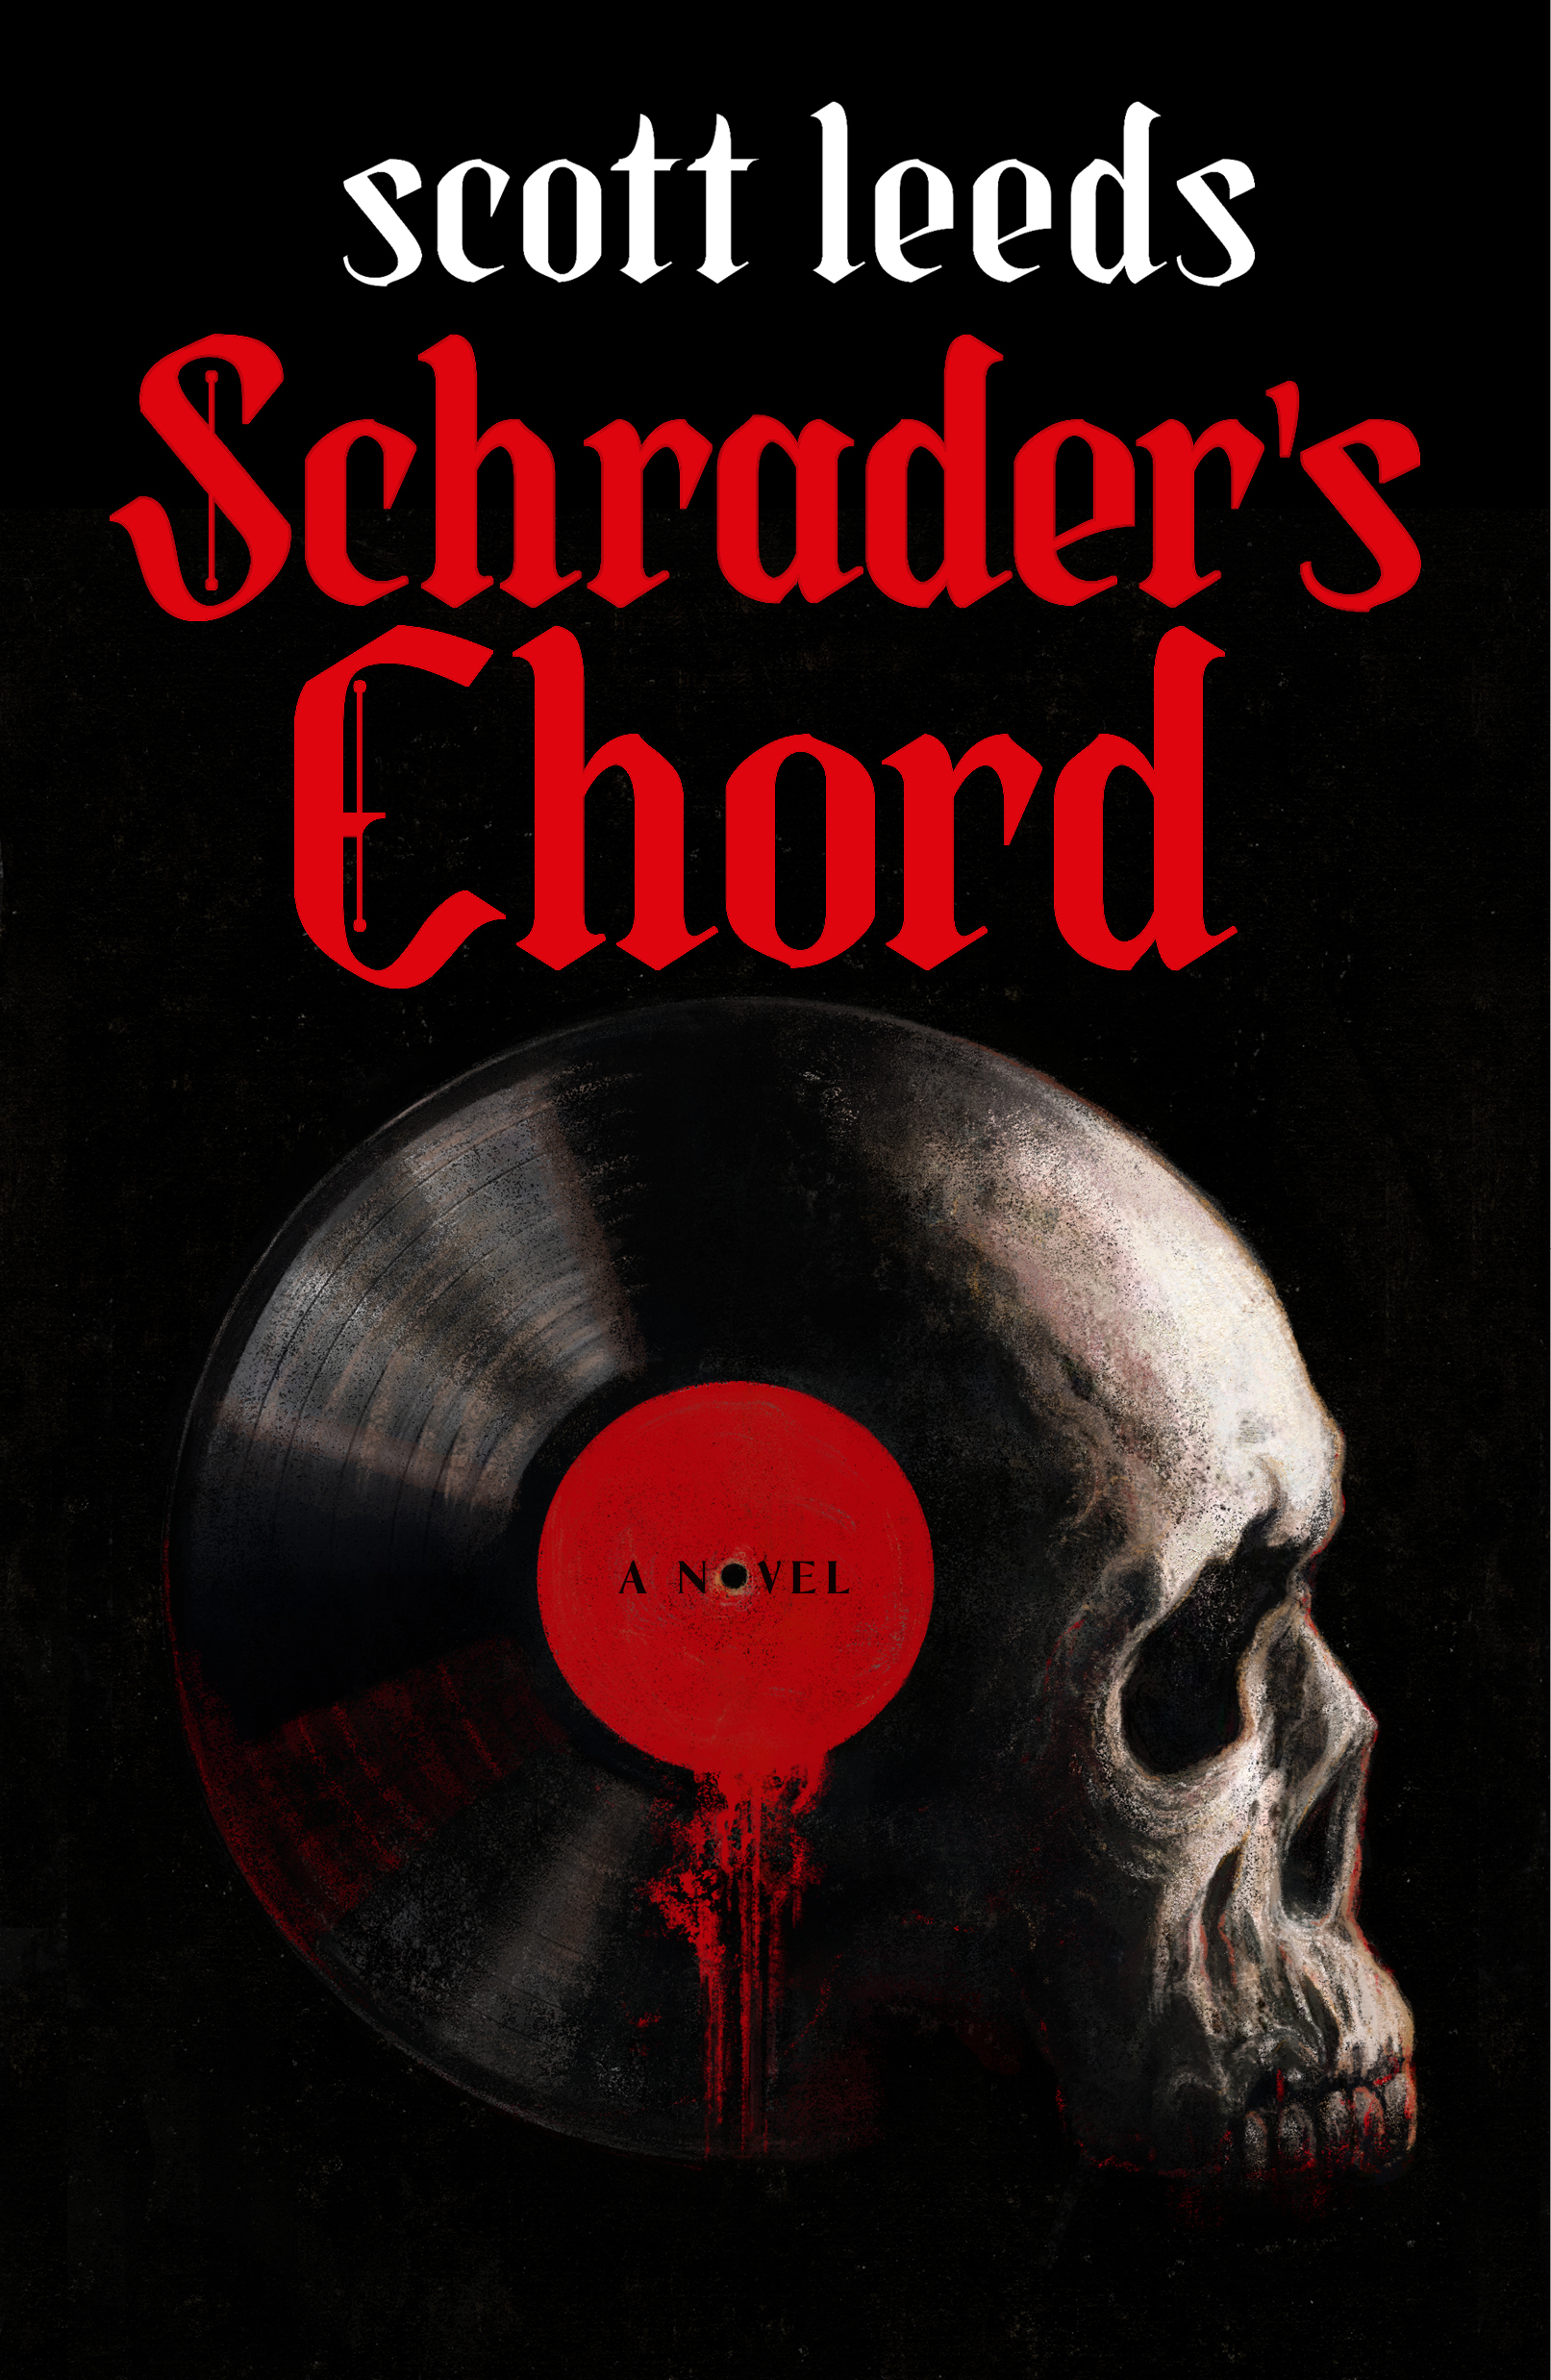 Schrader's Chord - 608